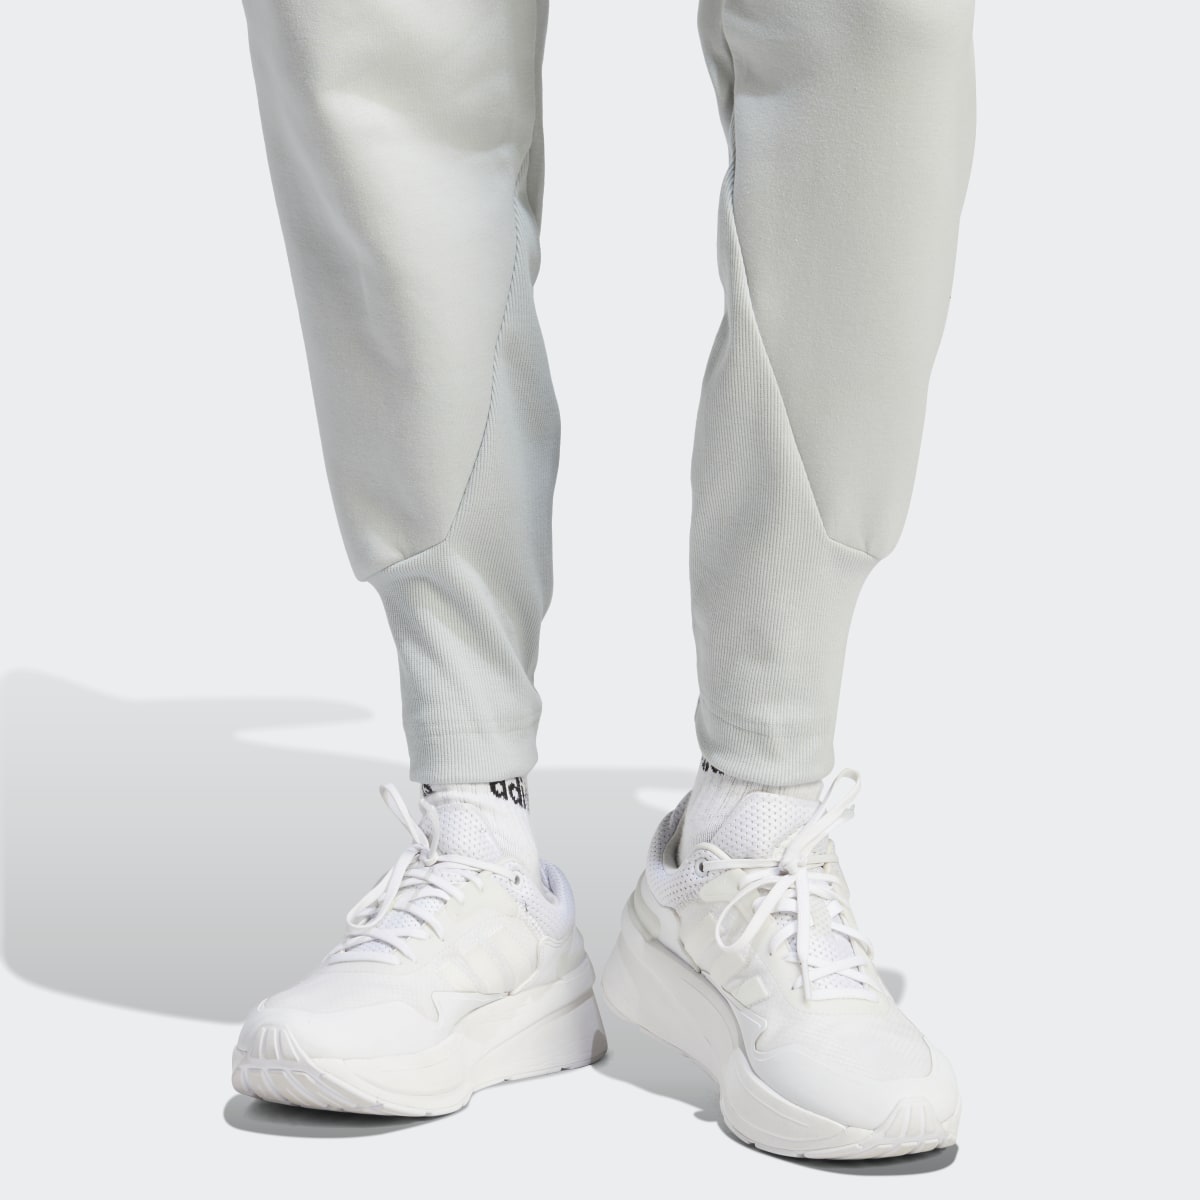 Adidas Z.N.E. Pants. 6